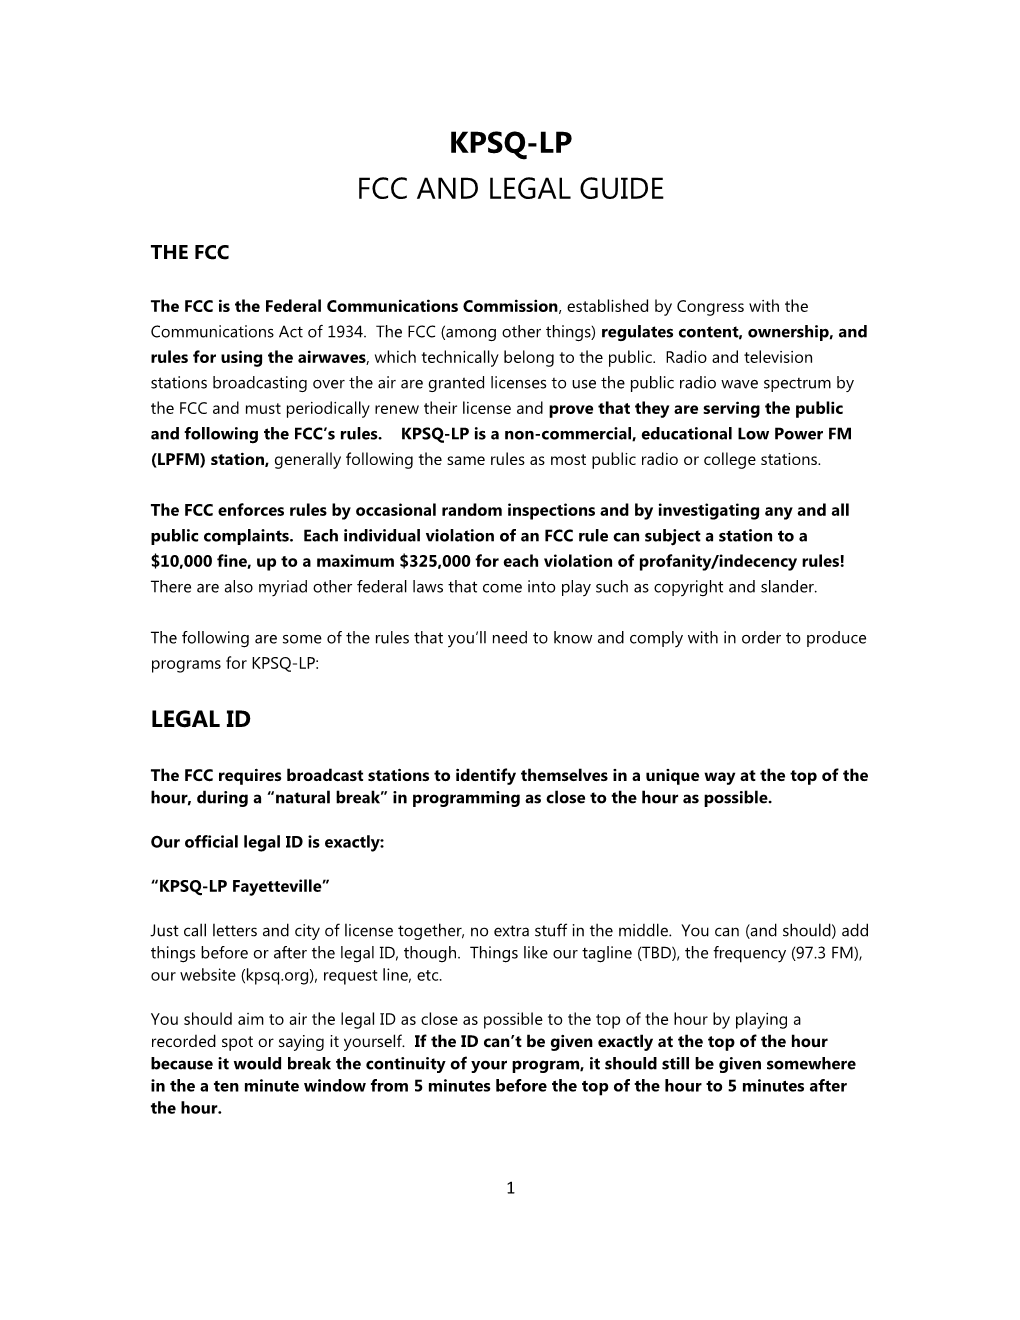 Kpsq-Lp Fcc and Legal Guide